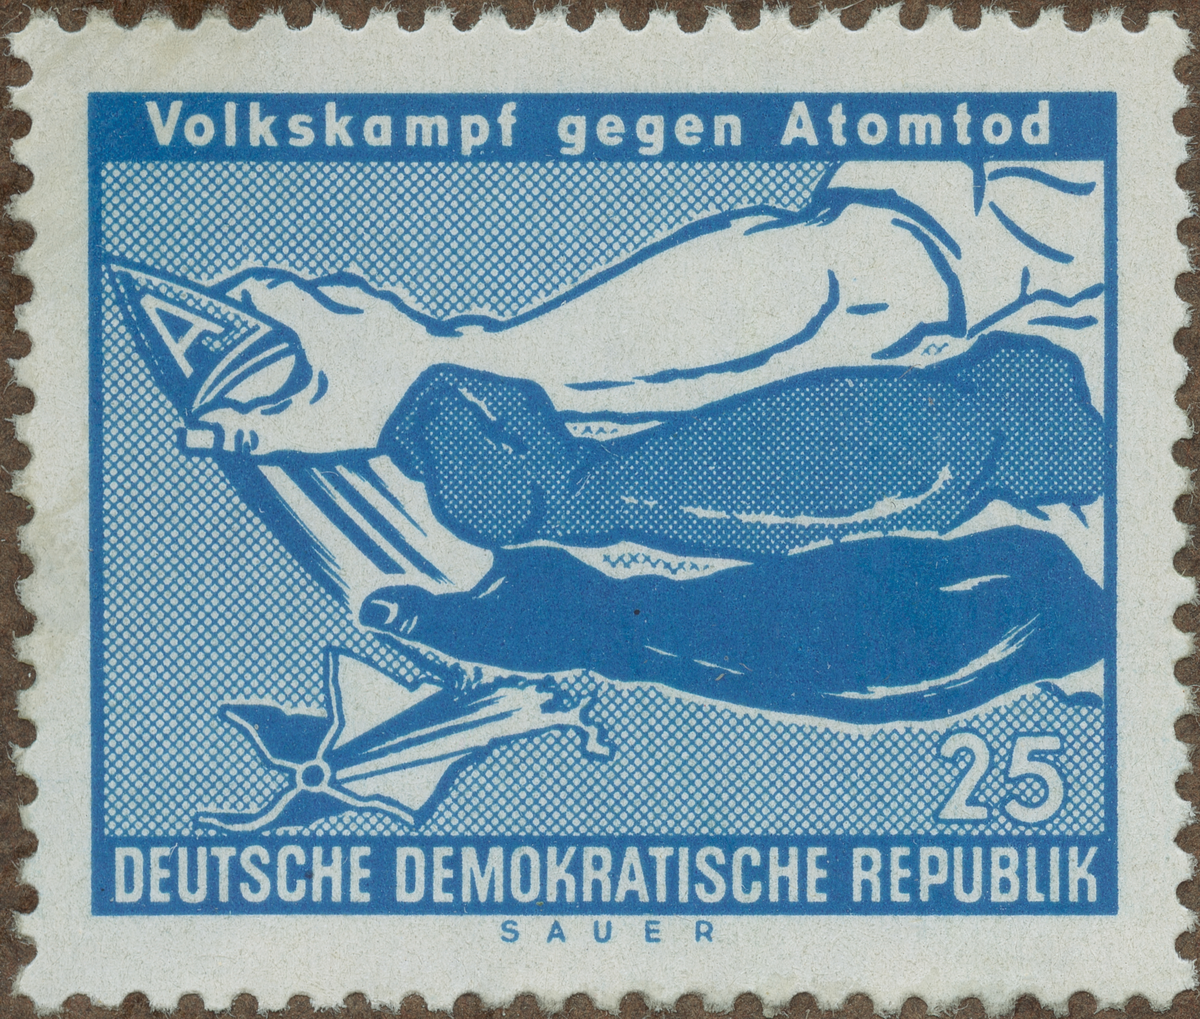 Frimärke ur Gösta Bodmans filatelistiska motivsamling, påbörjad 1950.
Frimärke från Öst Tyskland, 1958. Motiv av Händer sönderrivande en atombomb -Symbol för: folkprotest mot atombombsdöden- =( "Volkskampf gegen atomtod")